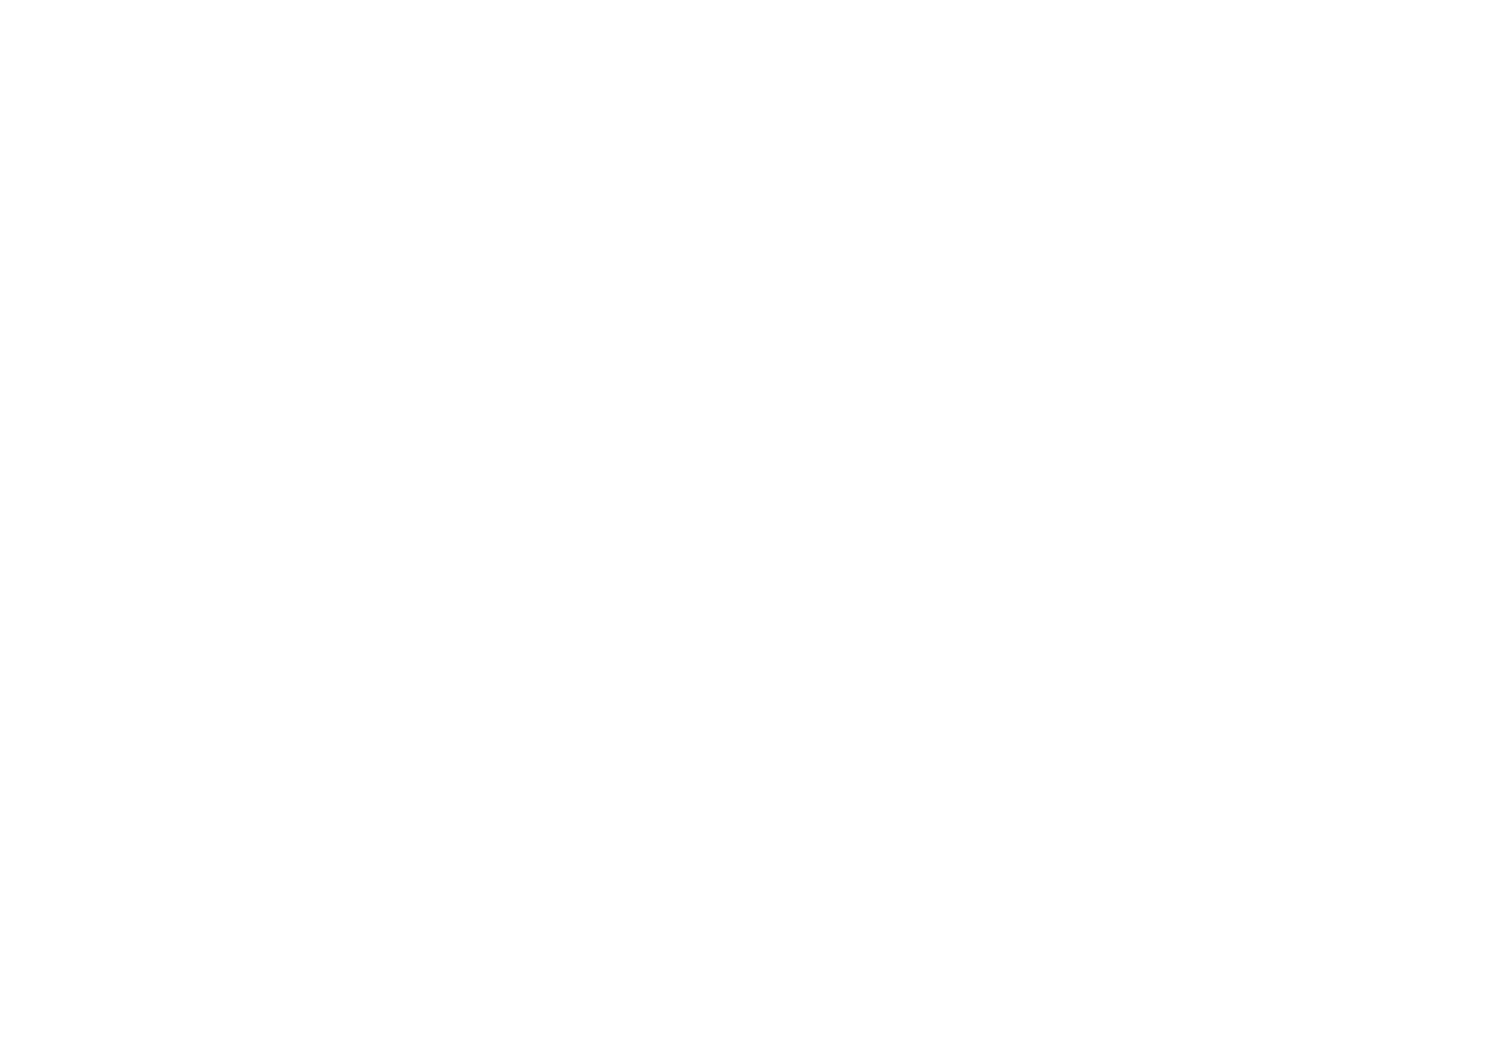 Beauty Suite Salon - Chicago